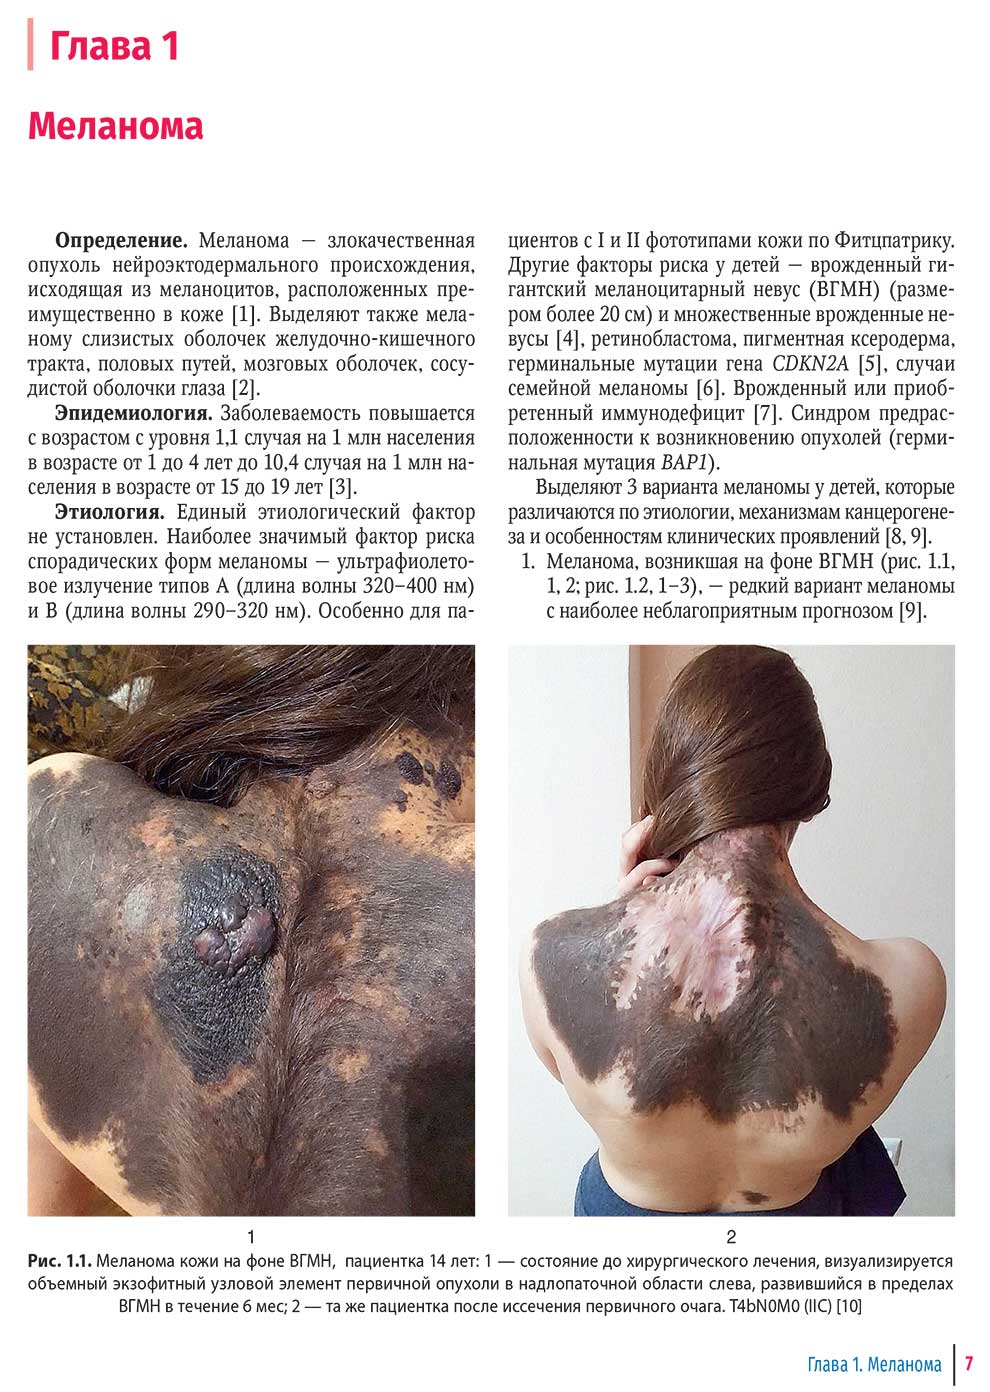 Меланома кожи на фоне ВГМН, пациентка 14 лет